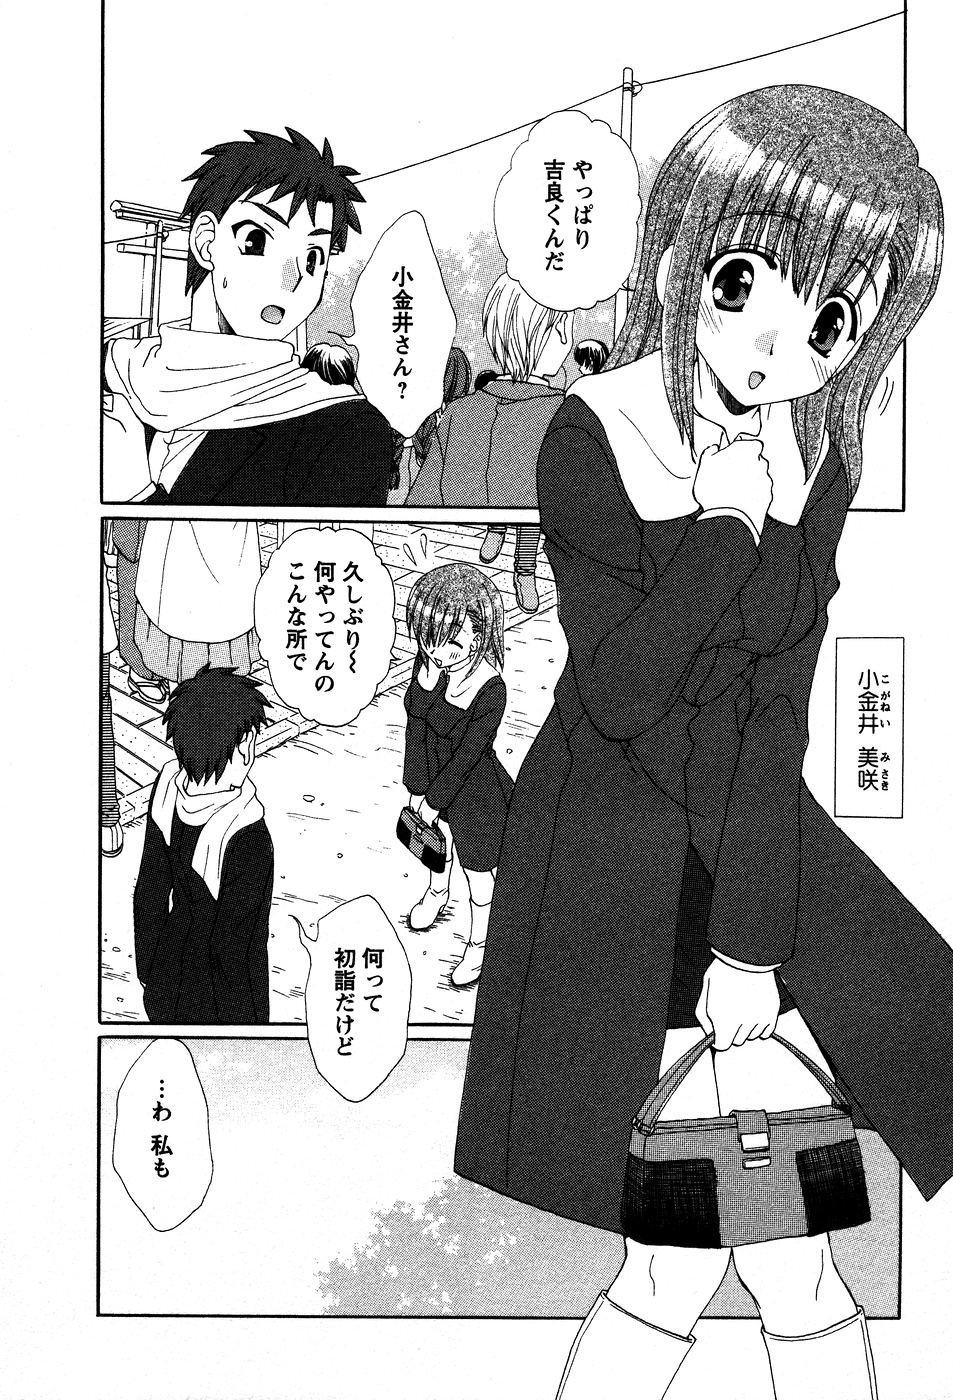 [Kurokawa Mio] Usagi no Hanayome - Rabbit Bride 174